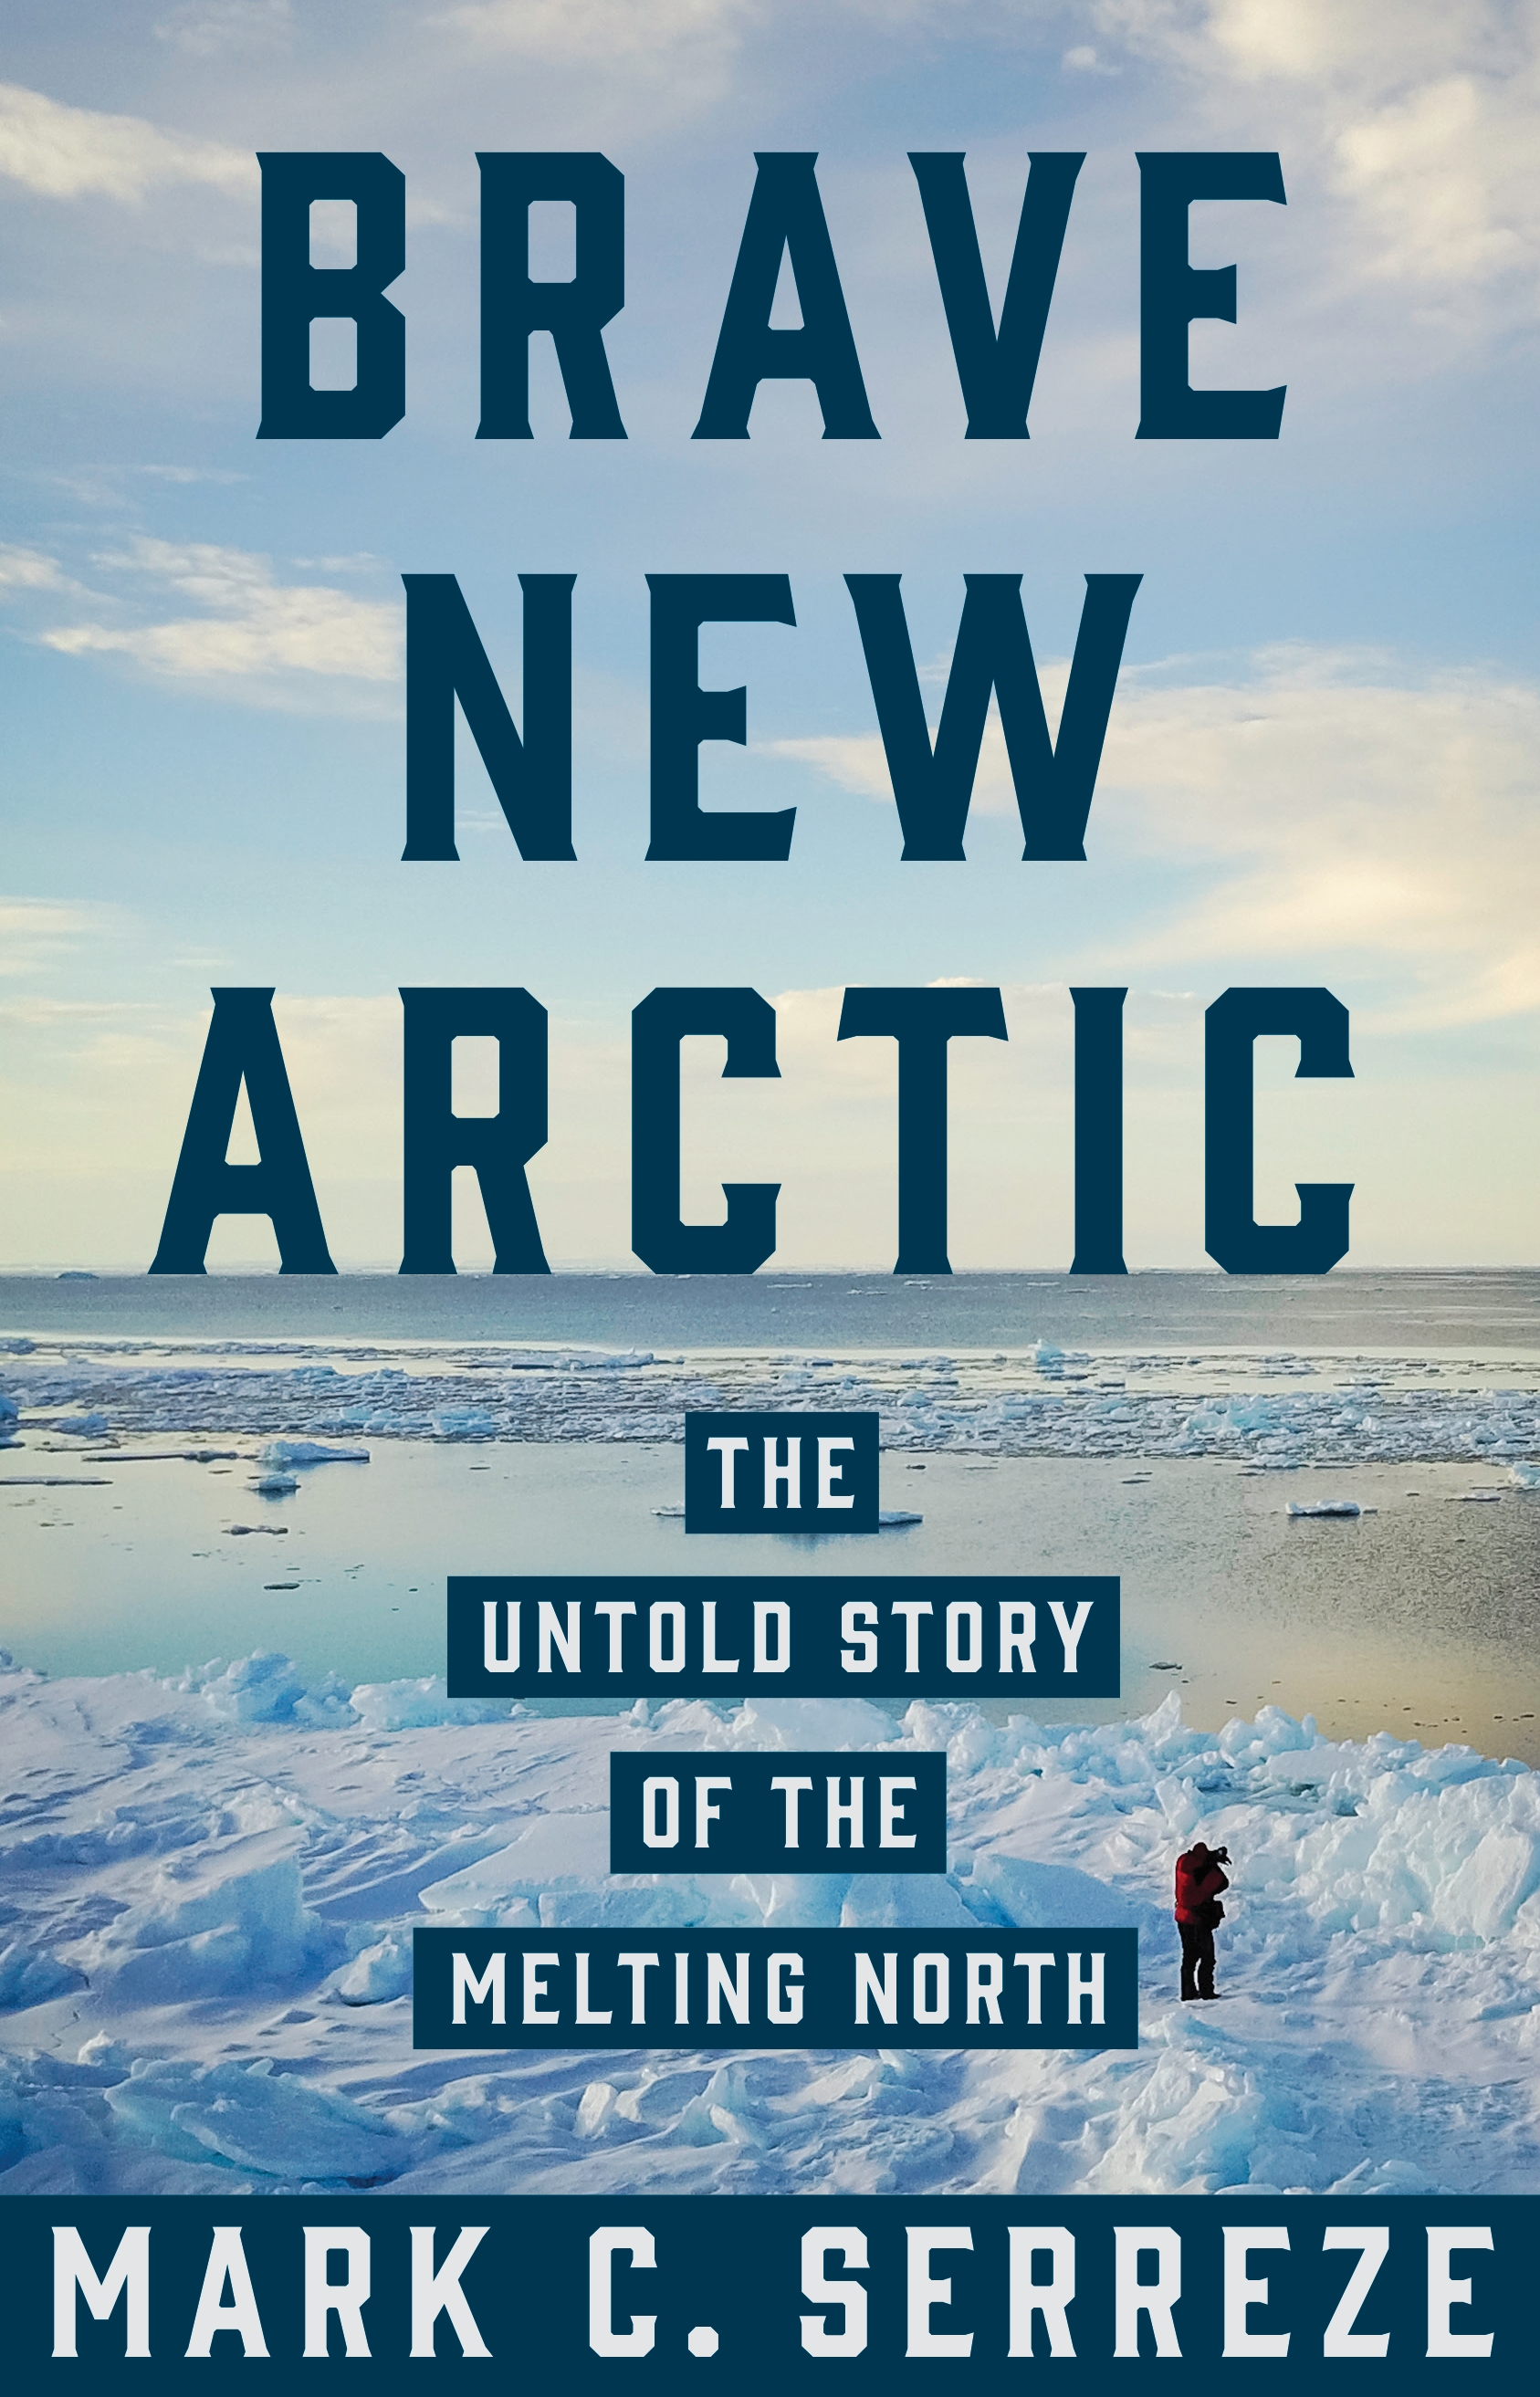 Couverture du livre "Brave New Arctic" (Serreze, 2018)